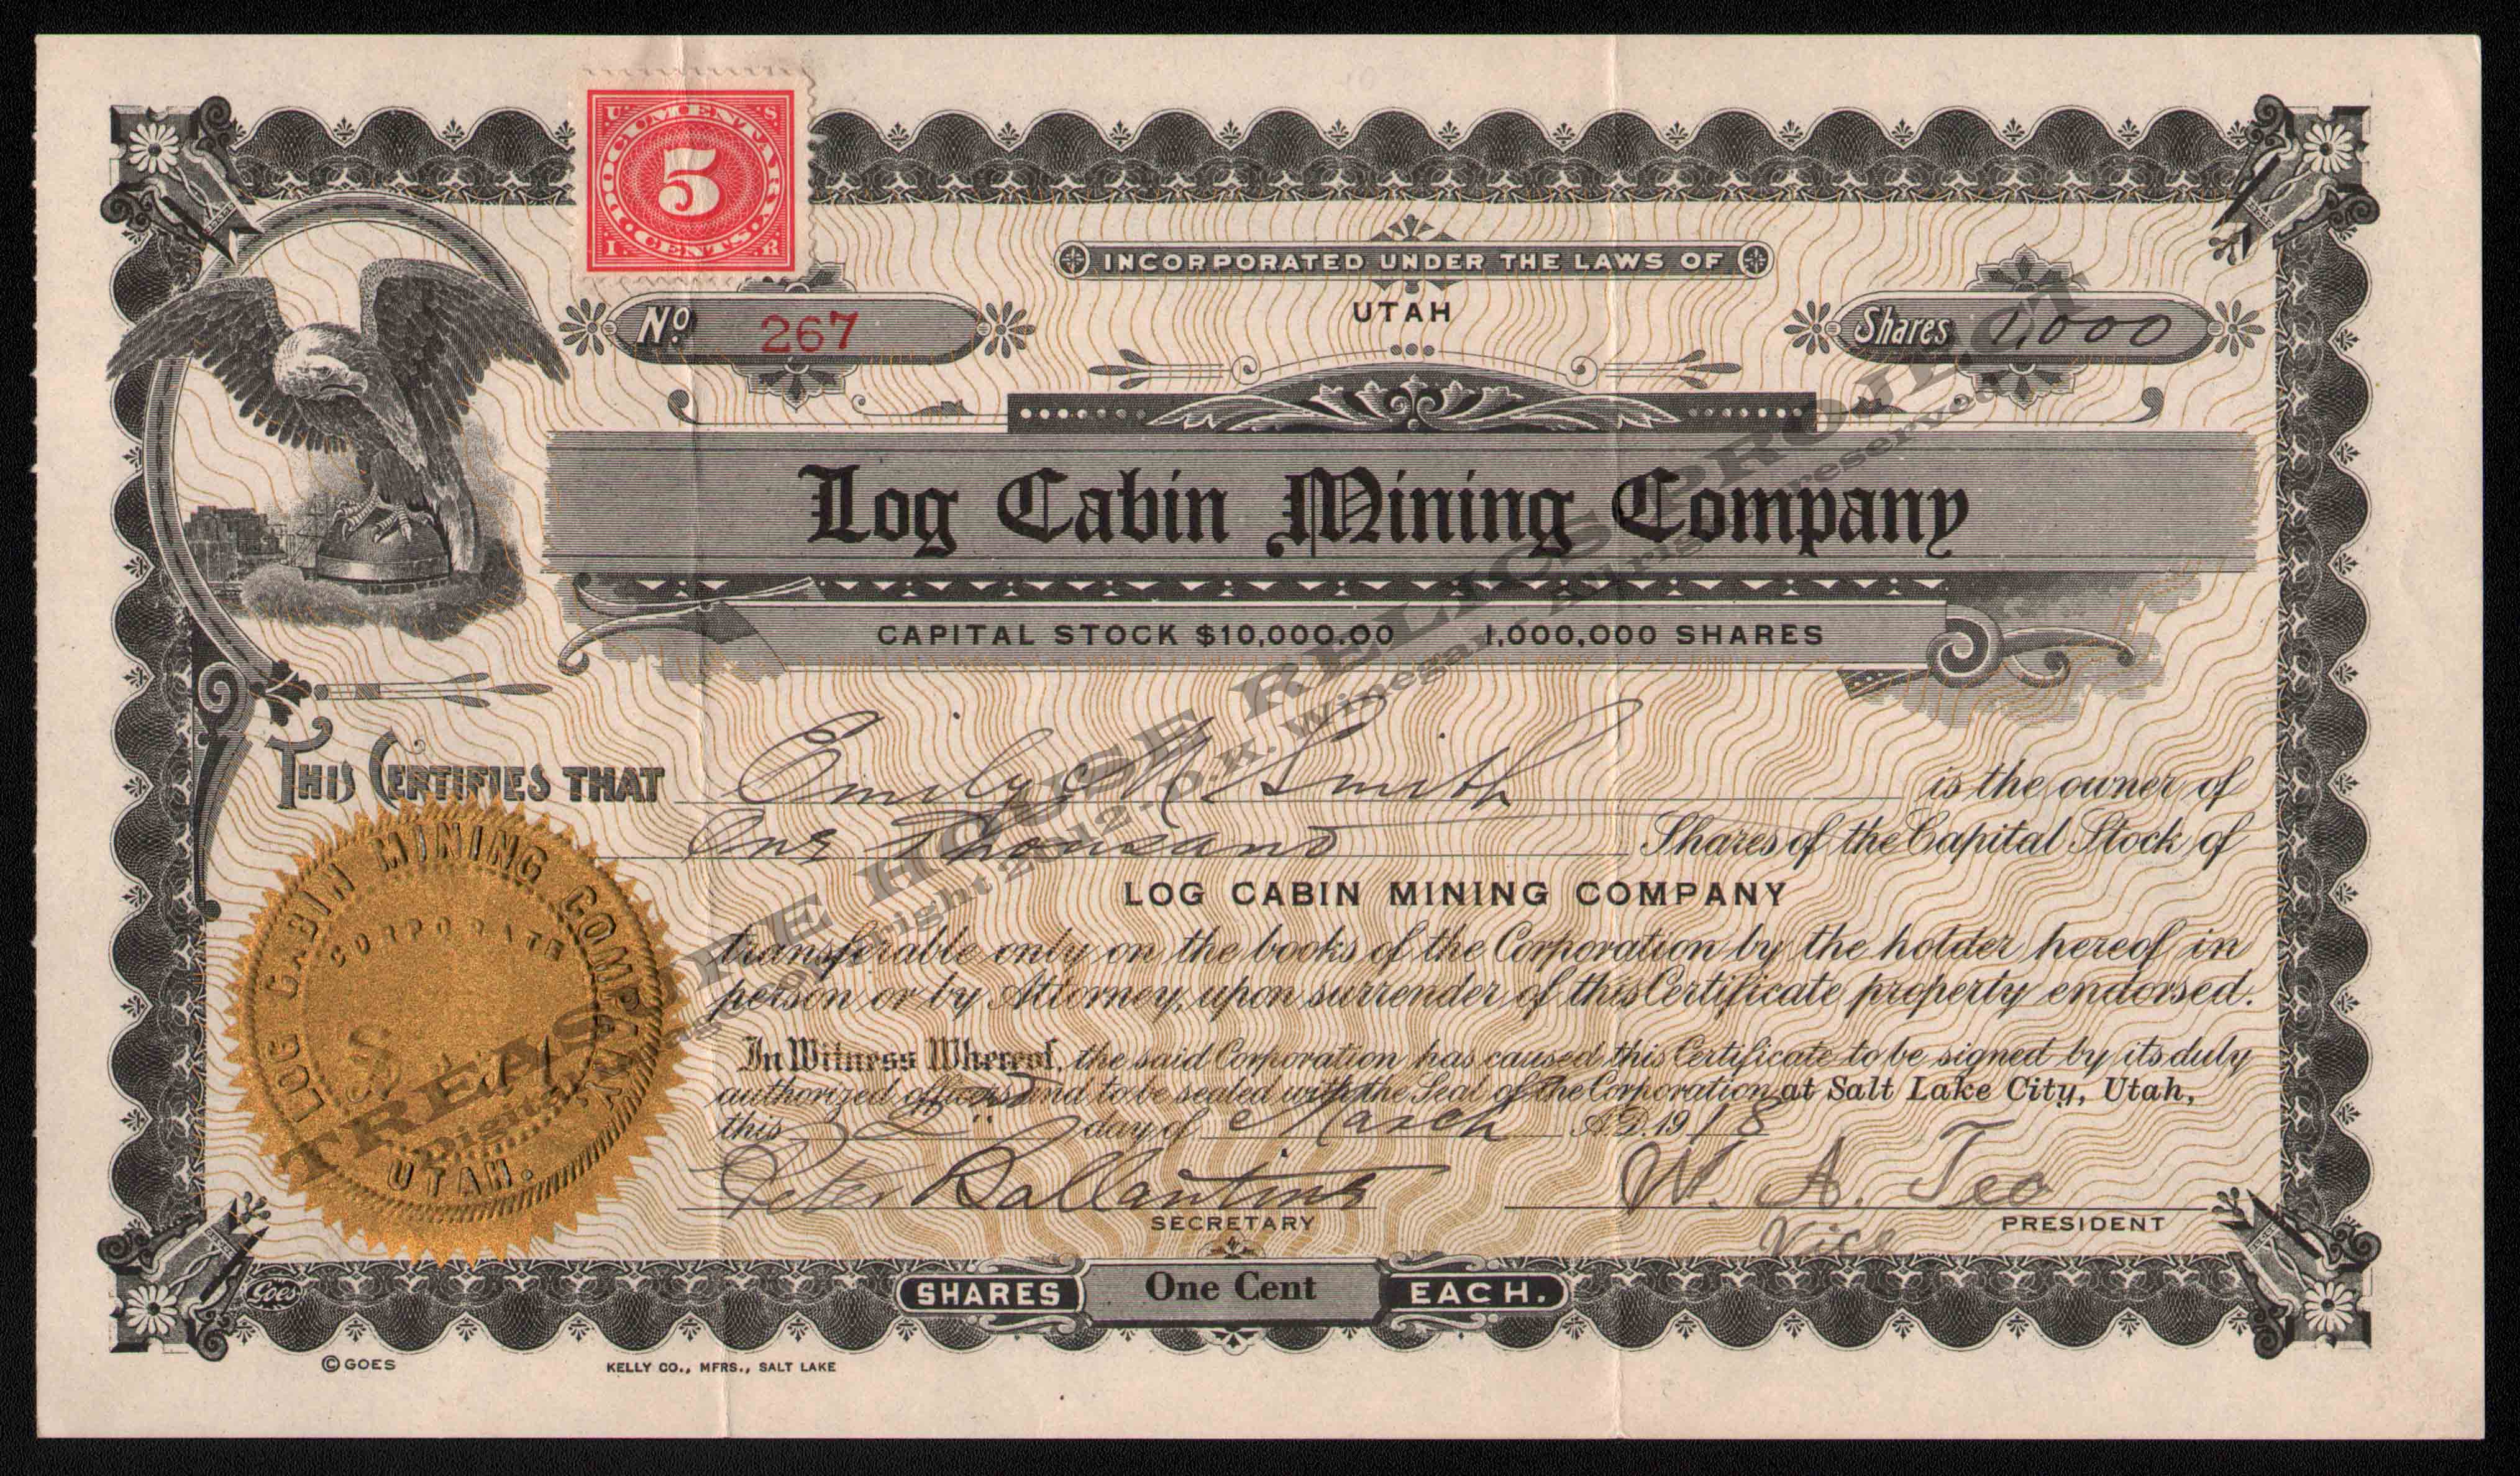 LETTERHEAD/STOCK_LOG_CABIN_MINING_COMPANY_267_1918_DSW_400_CROP_EMBOSS.jpg